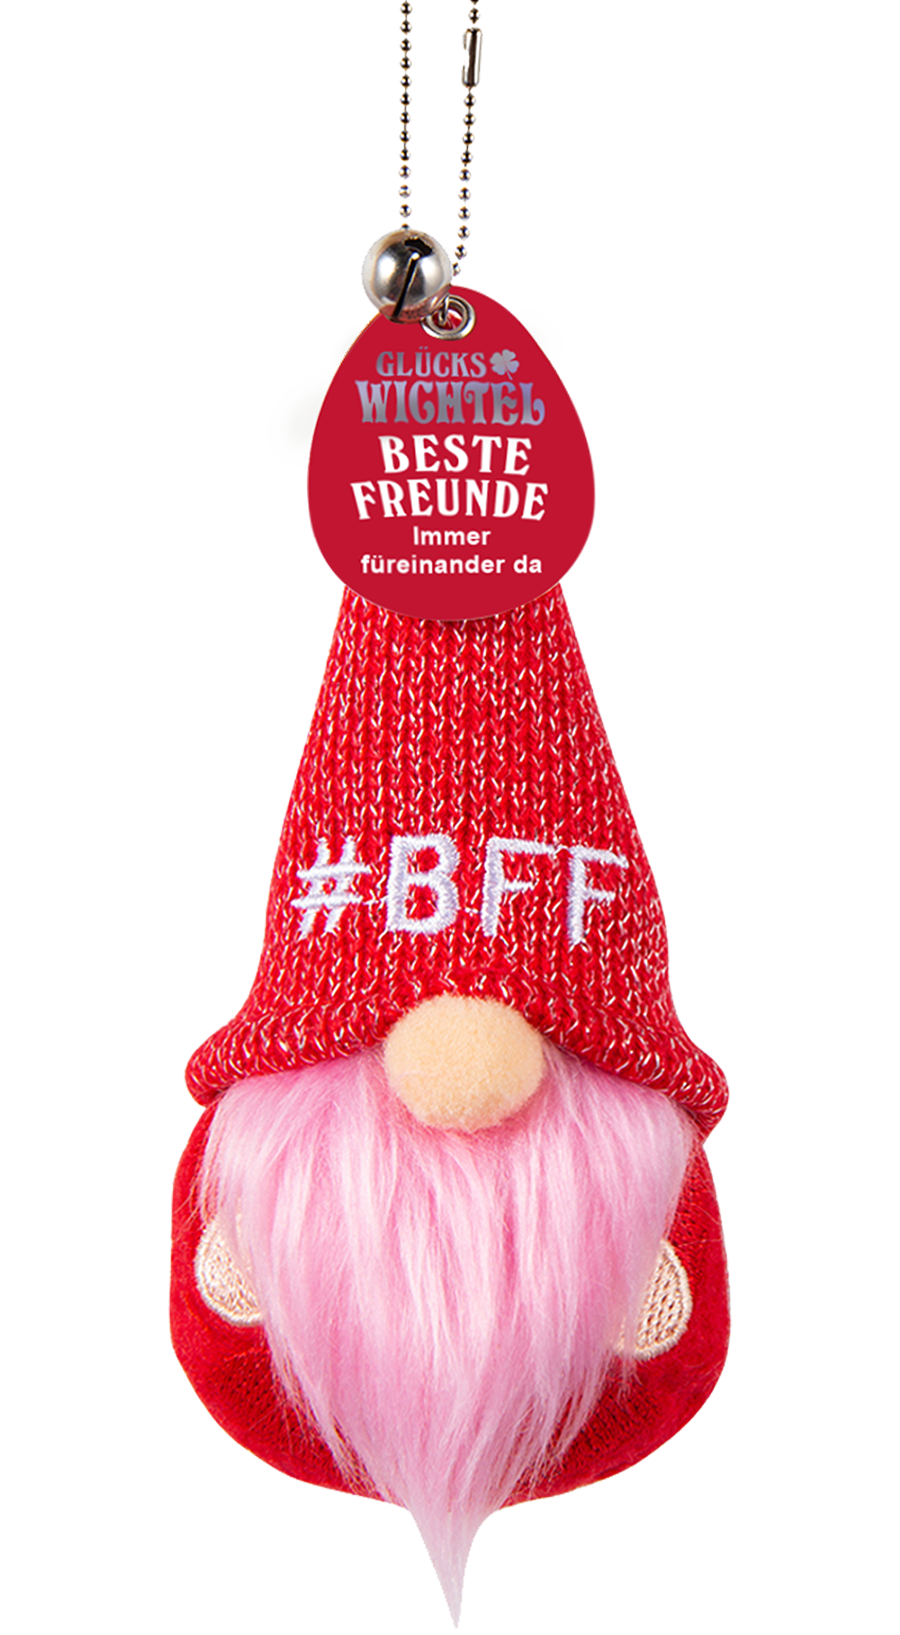 H & H Glückswichtel - Beste Freunde #BFF